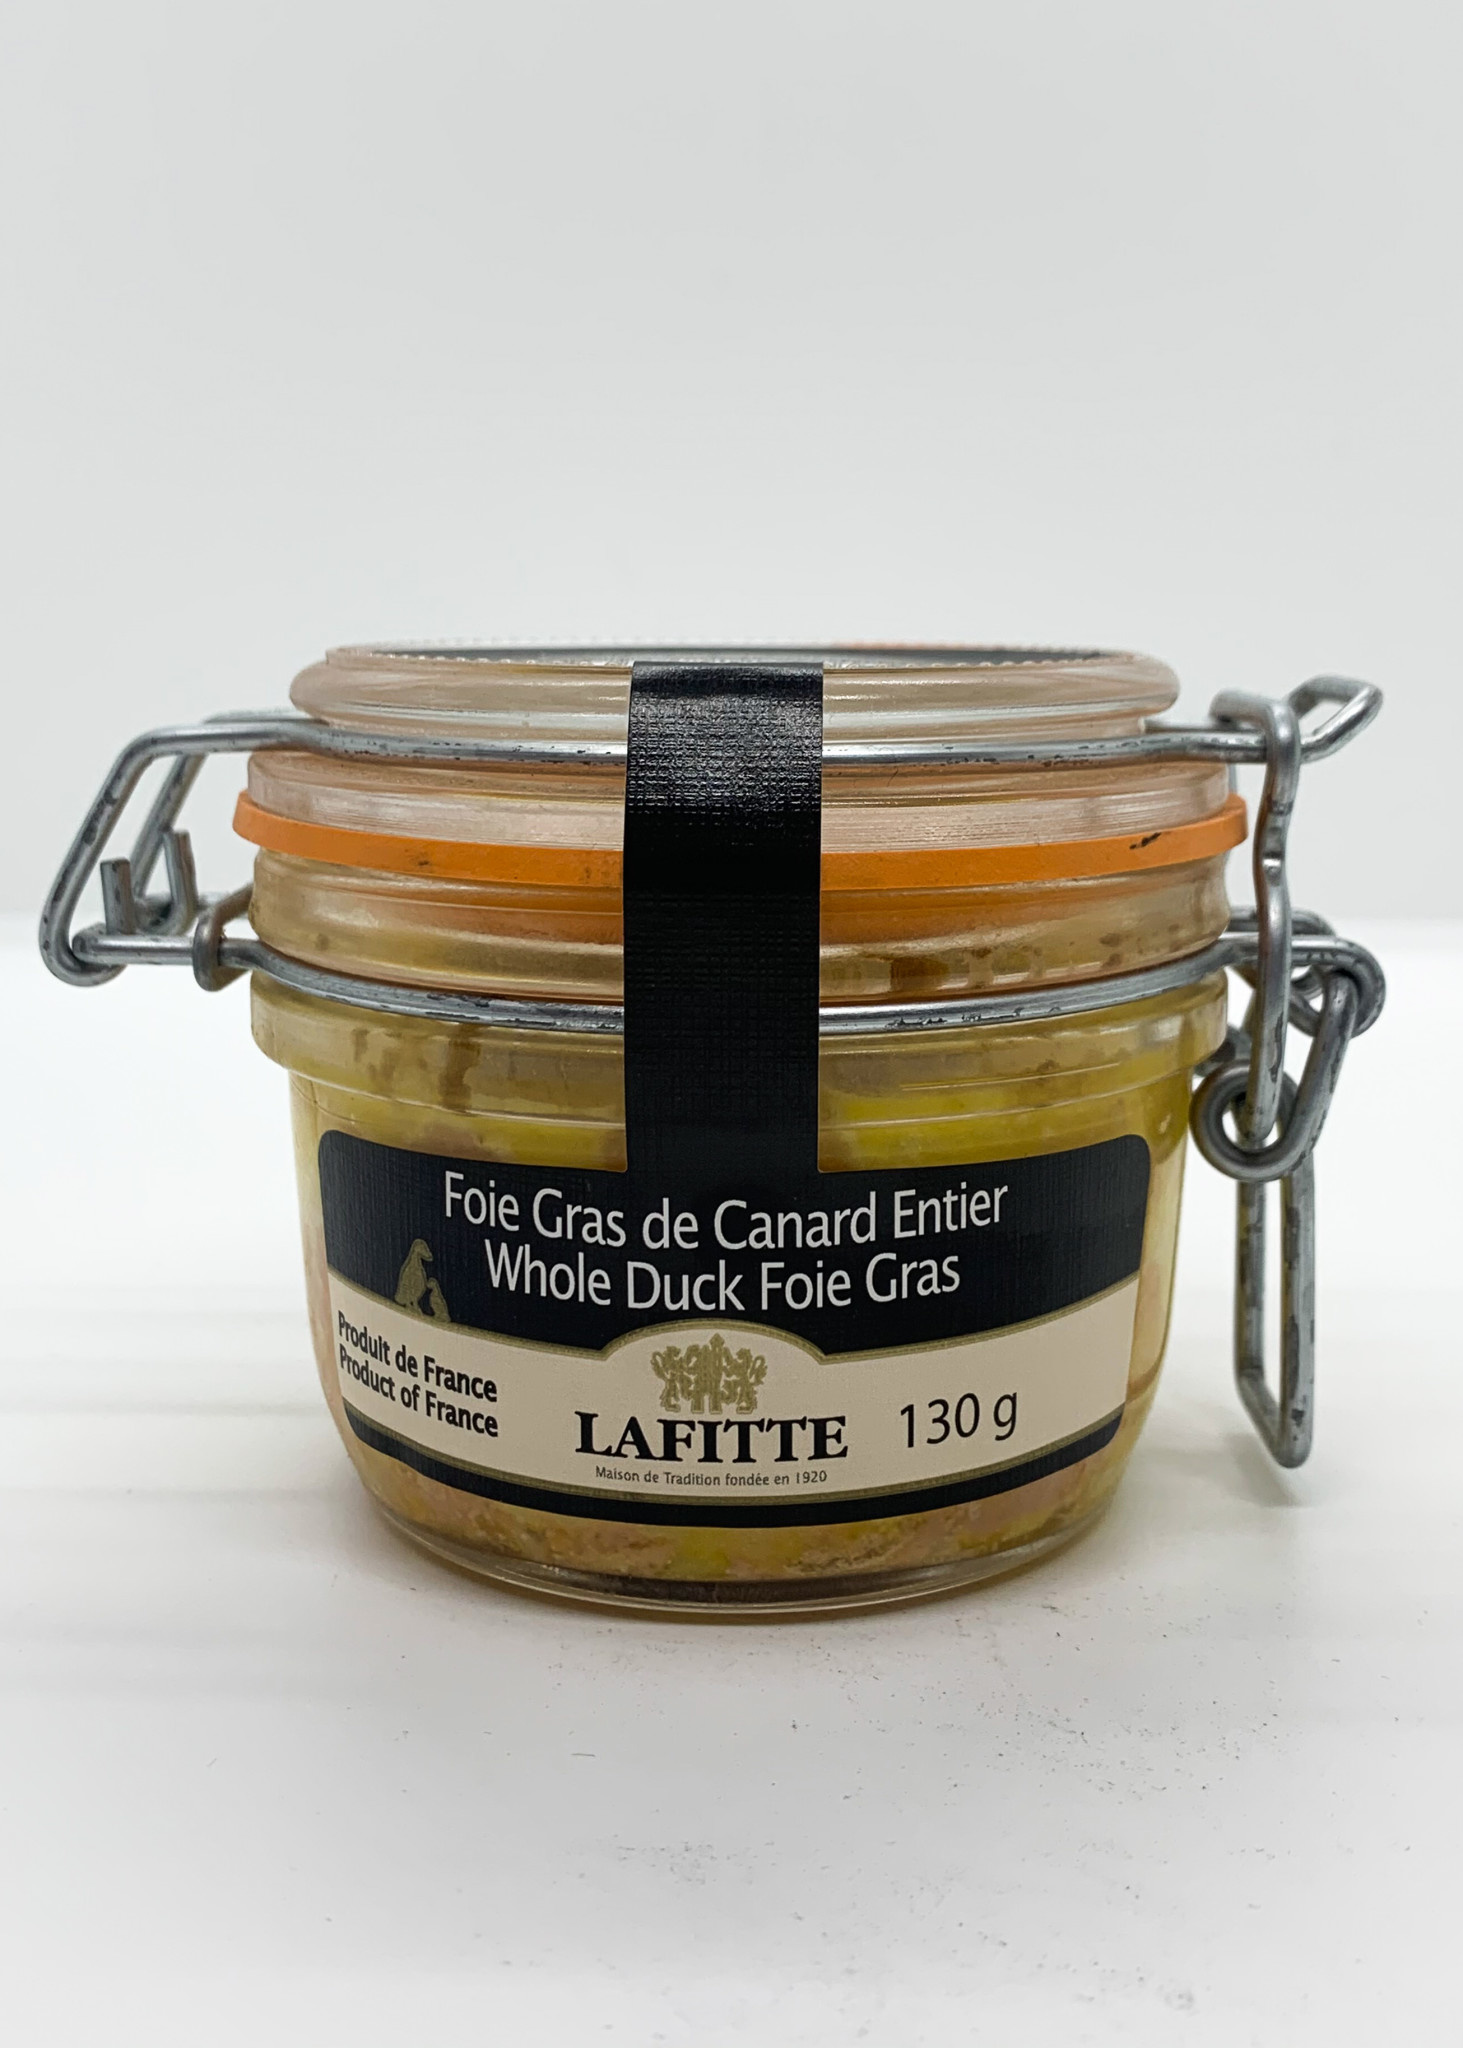 Foie gras entier de canard des Landes bocal 130g (Lafitte)